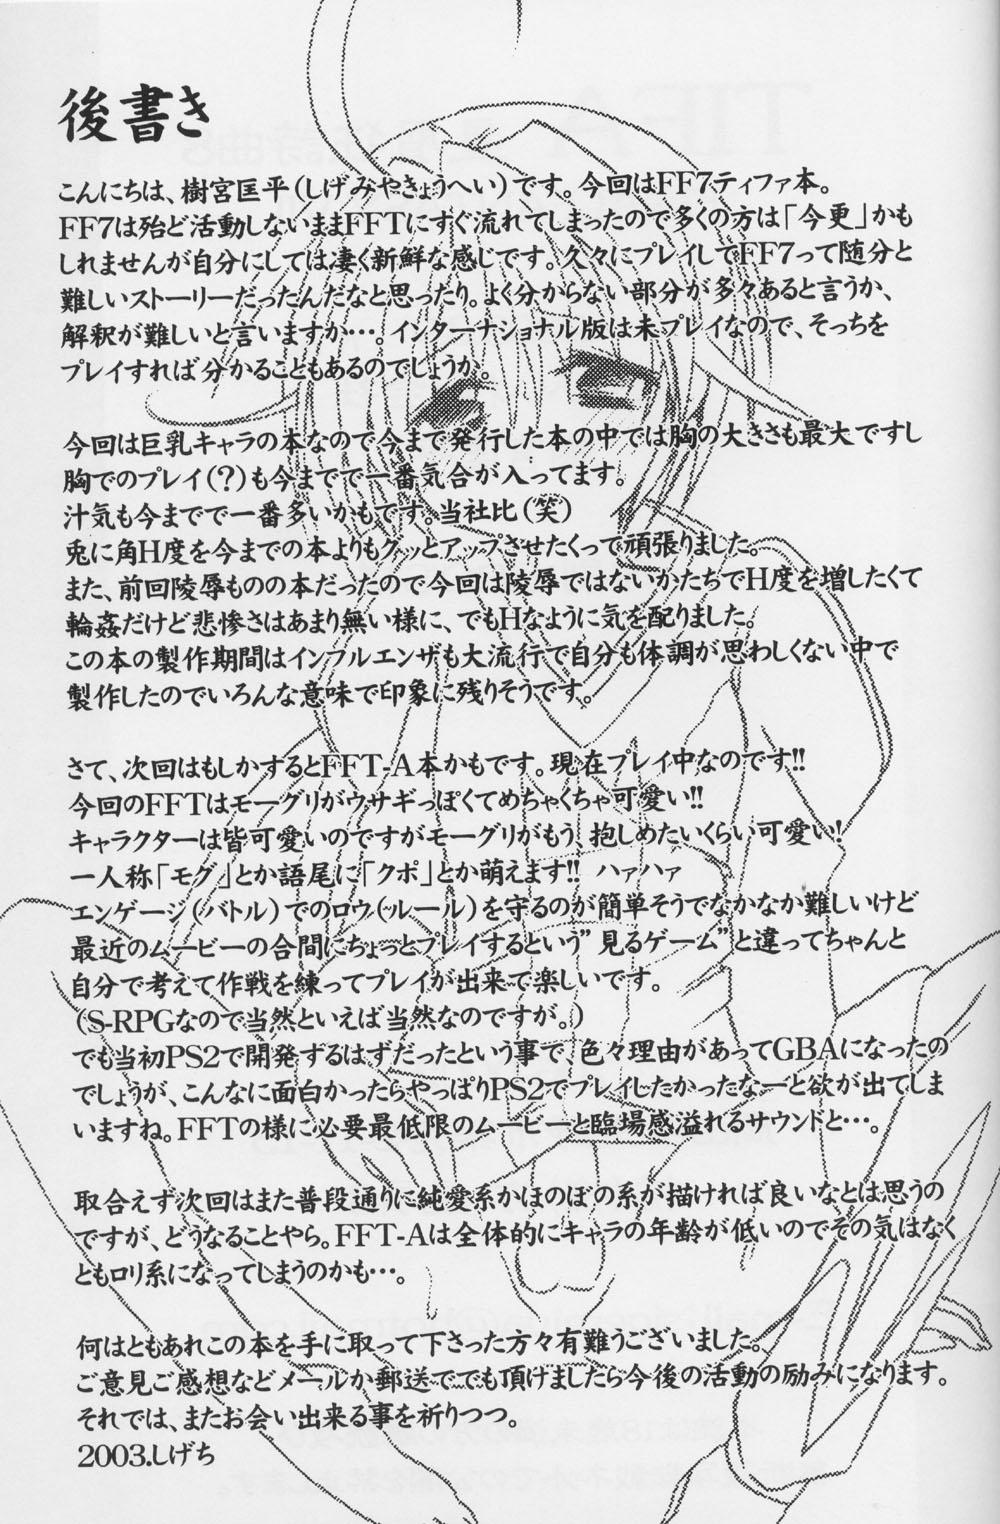 Cream TIFA Hoshikuzu Kyoushikyoku 8 - Final fantasy vii Duro - Page 17